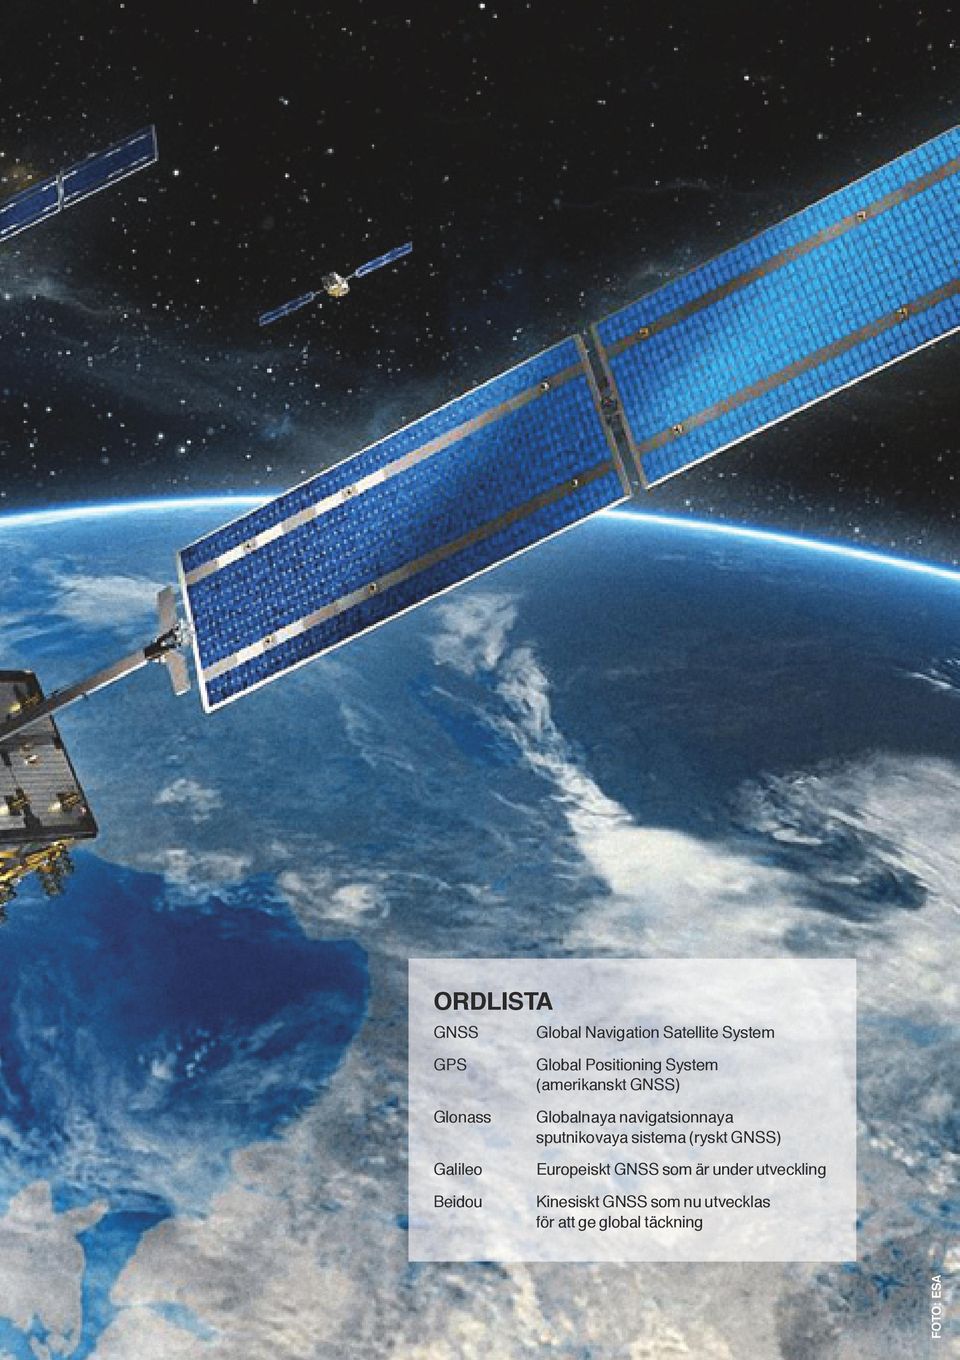 sputnikovaya sistema (ryskt GNSS) Europeiskt GNSS som är under utveckling